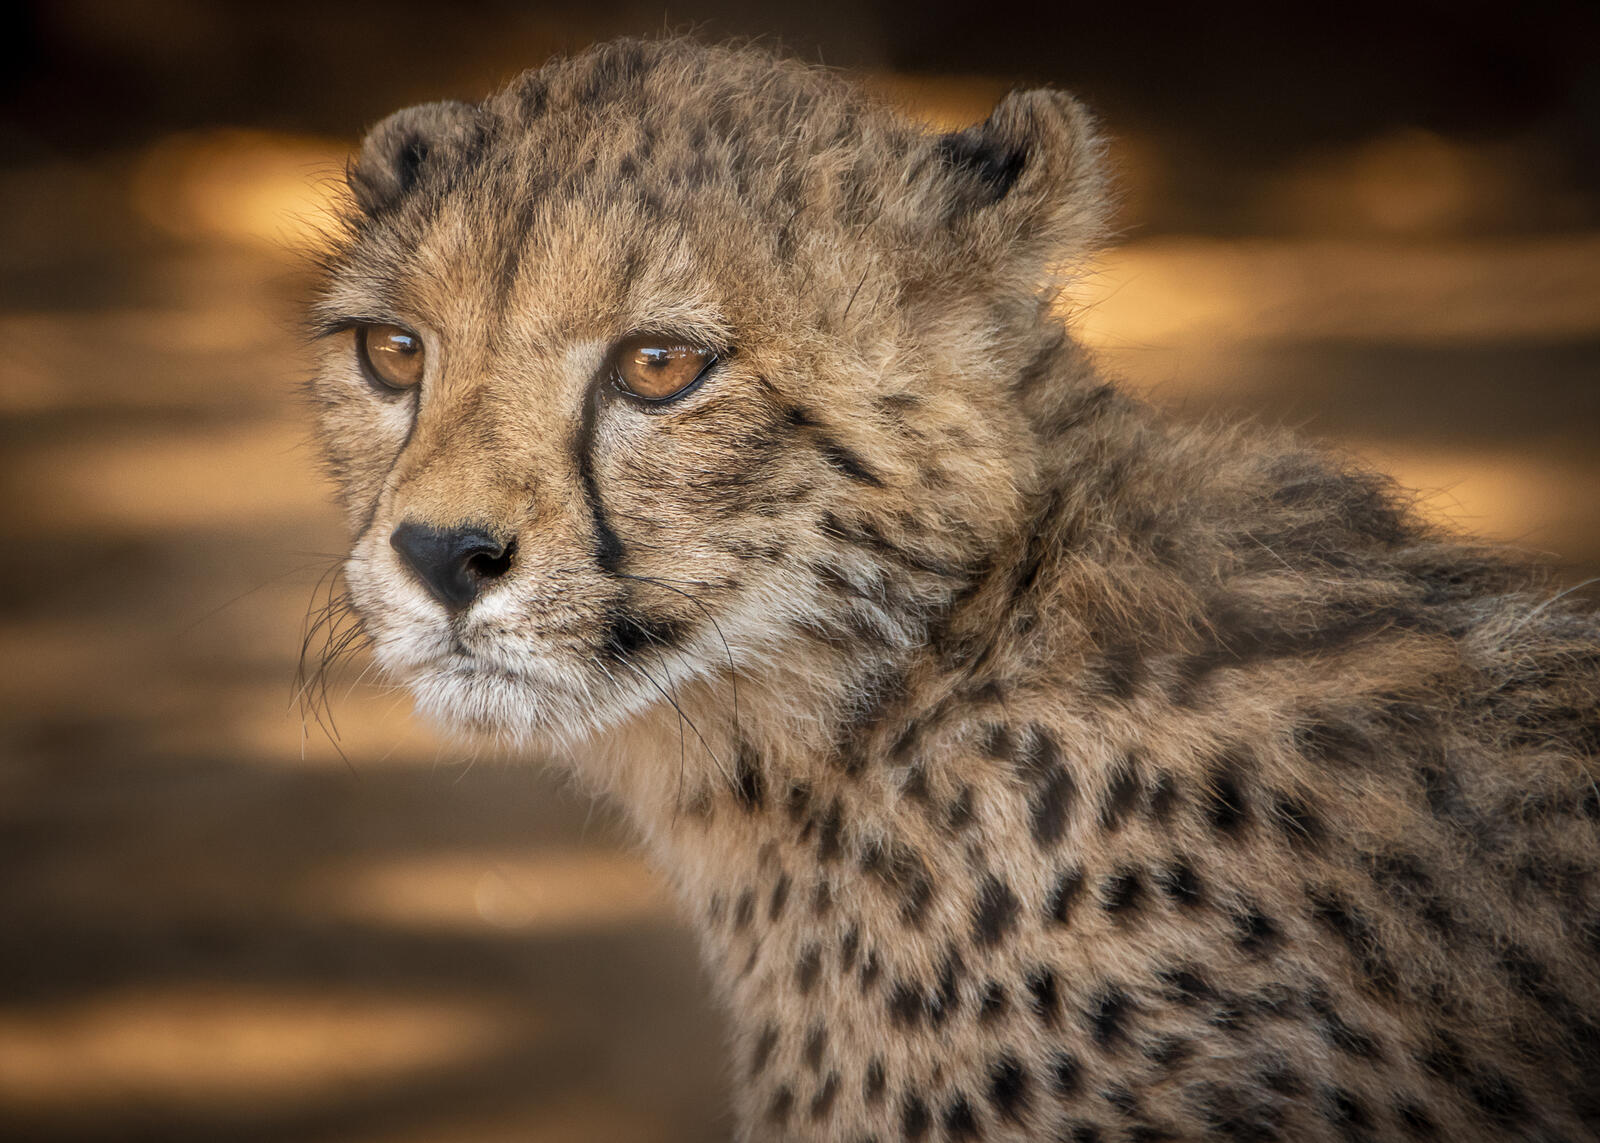 Wallpapers young Cheetah predator animal on the desktop